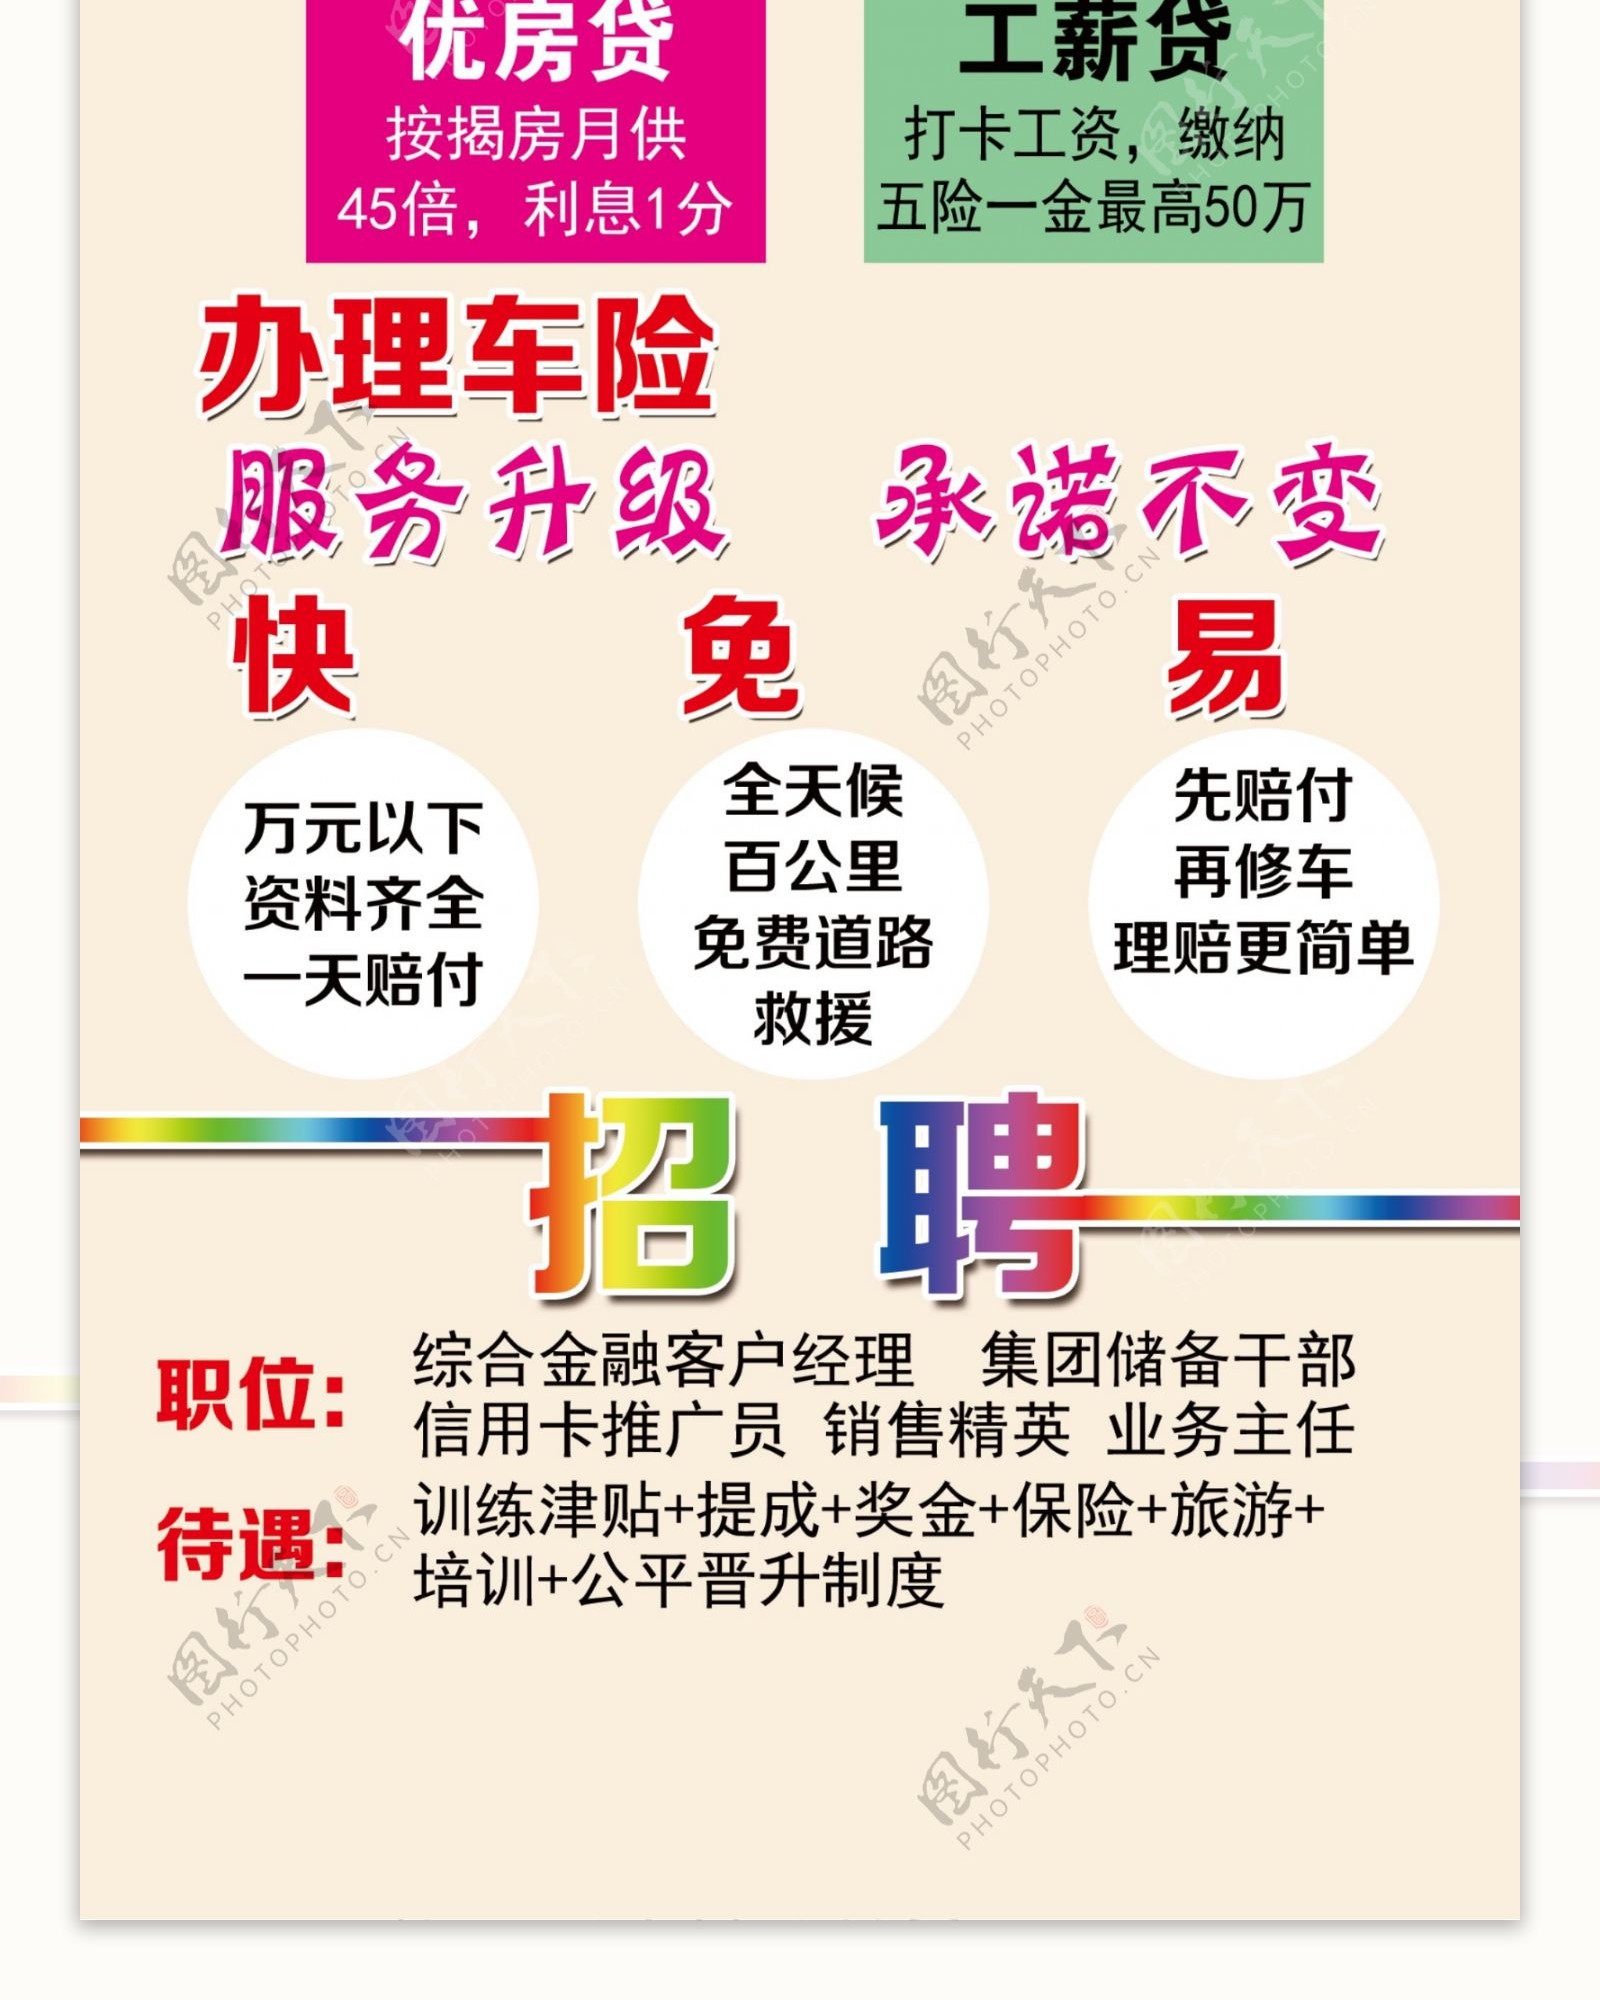 中国平安车险信用卡展架宣传展板